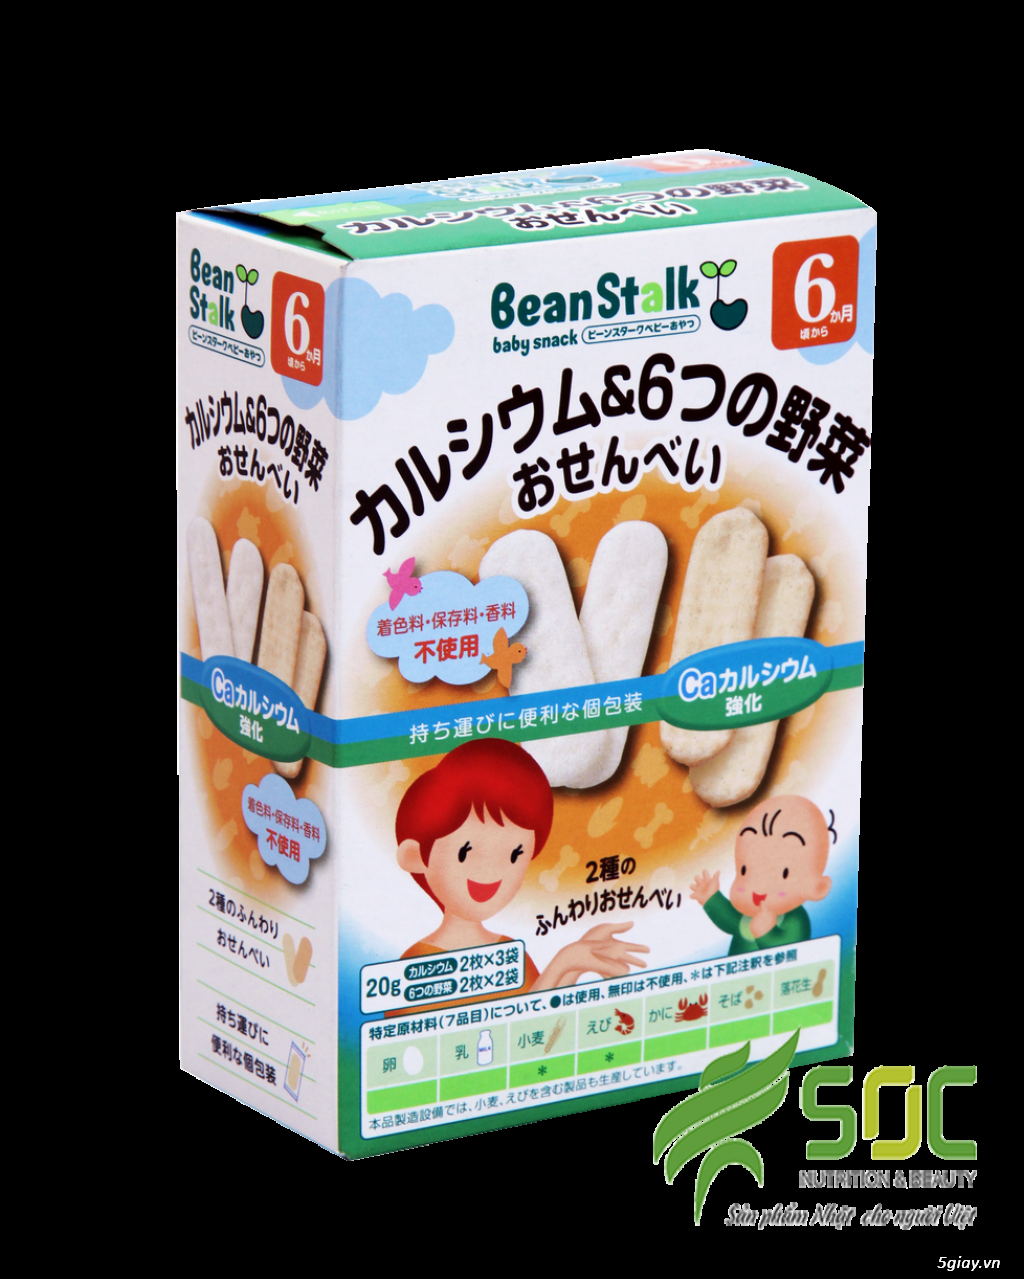 Beanstalk - nhãn hiệu hàng đầu của Nhật Bản. - 14